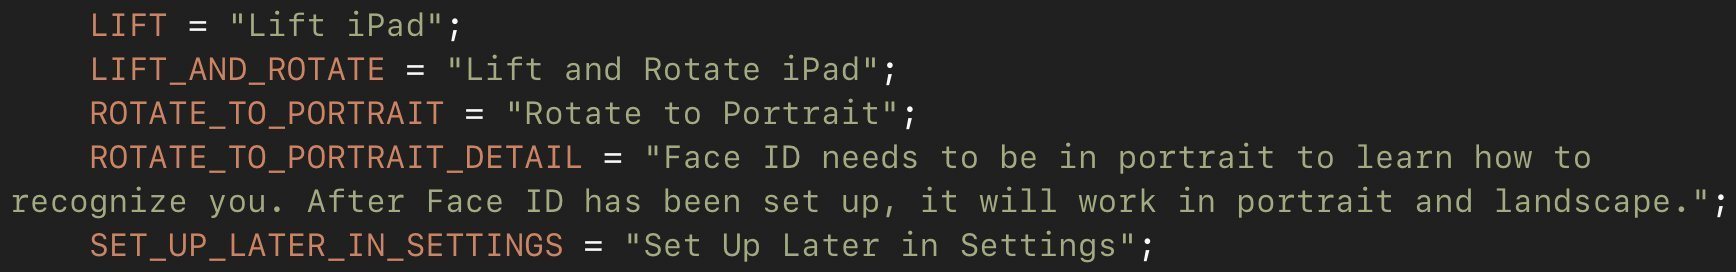 iOS 12.1 conferma: iPad Pro sarà dotato di Face ID 1